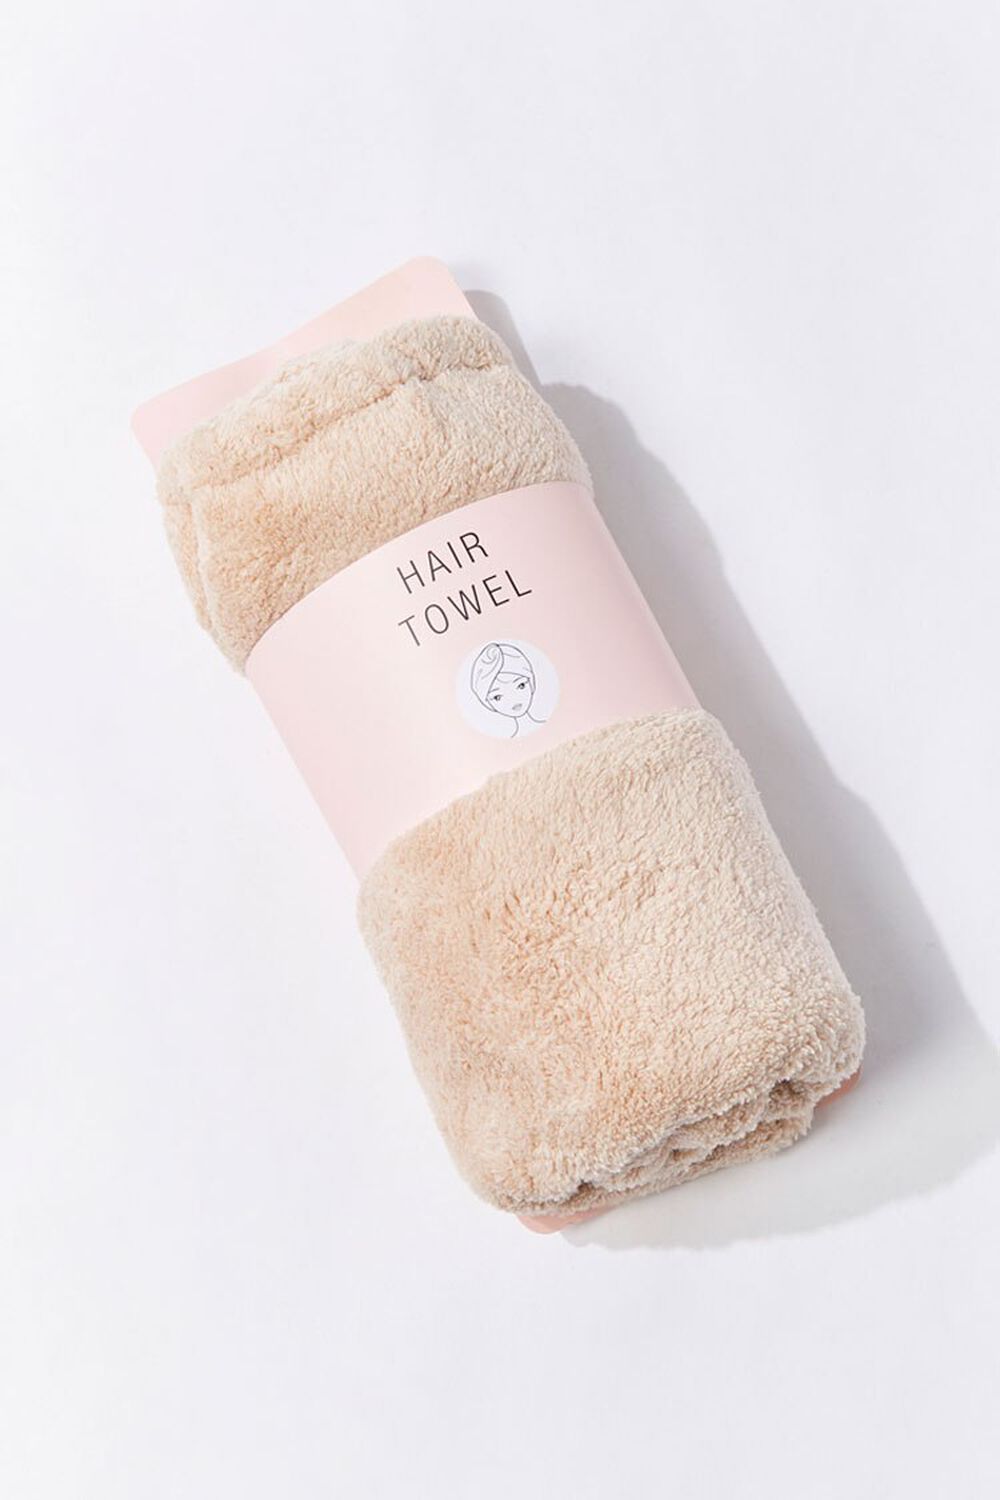 NUDE Plush Hair Towel, image 1